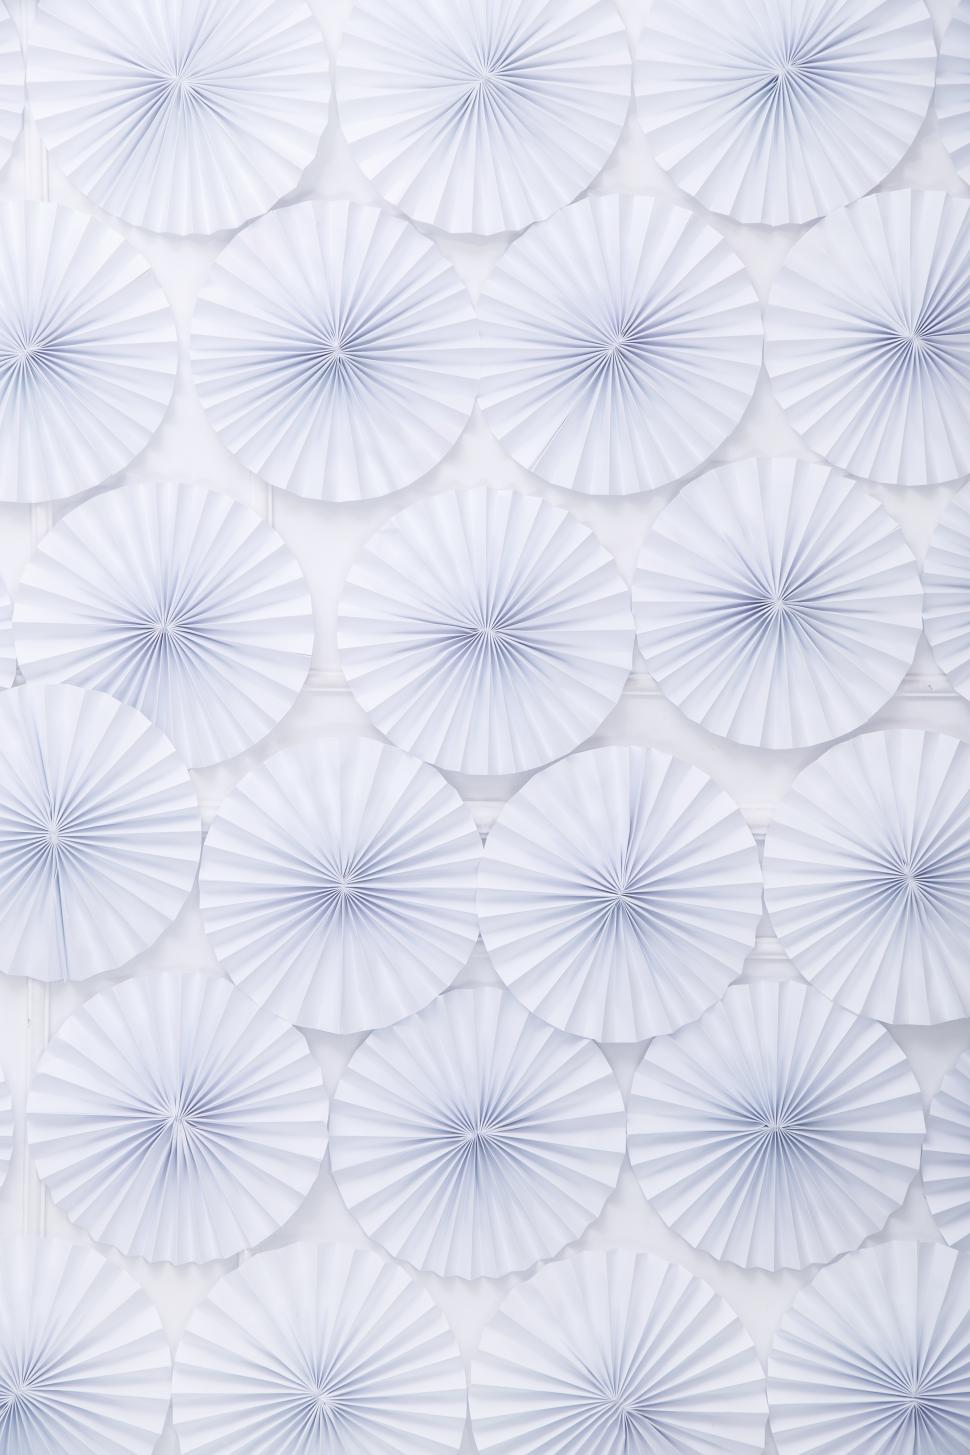 Free Image of Folded White circles background 